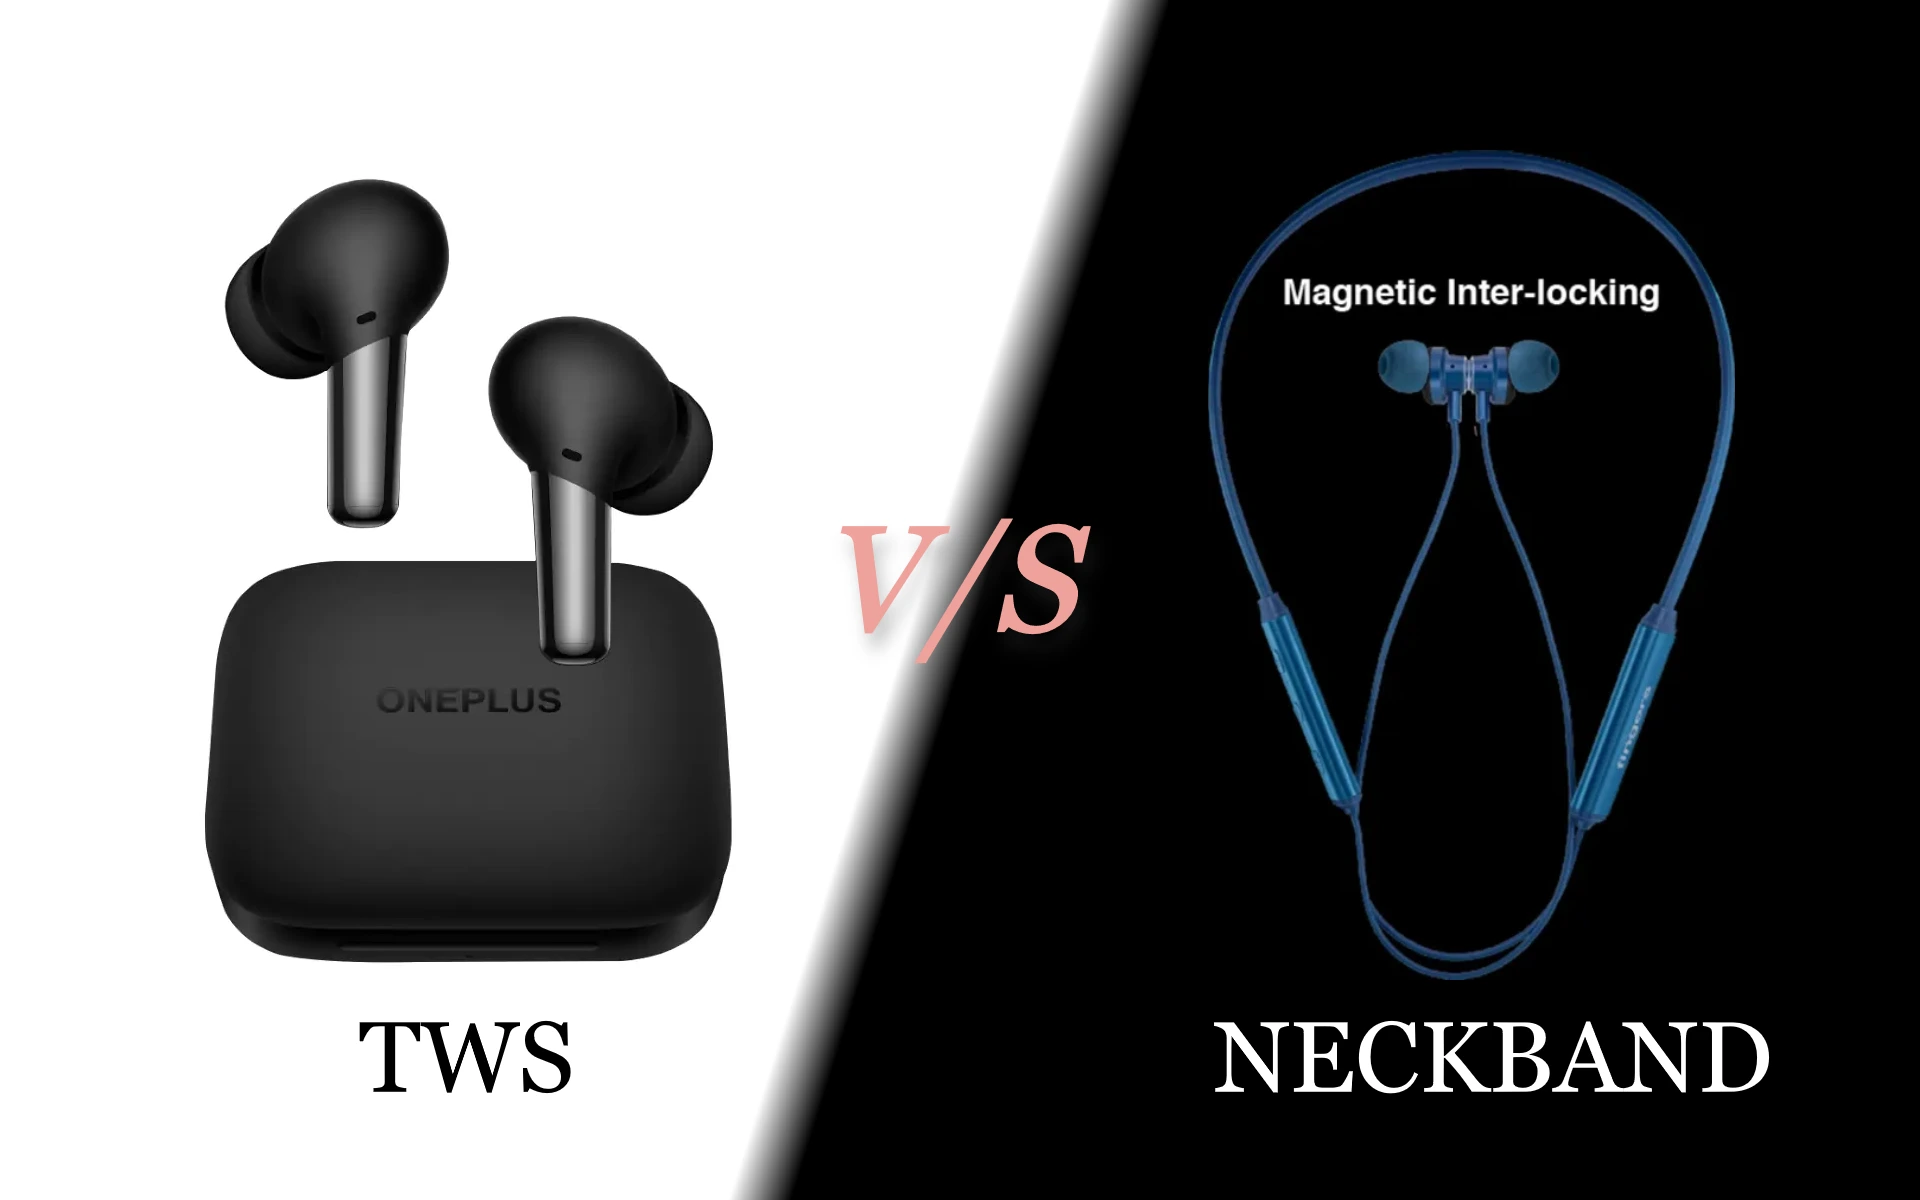 Neckband earphones vs Truly wireless earbuds